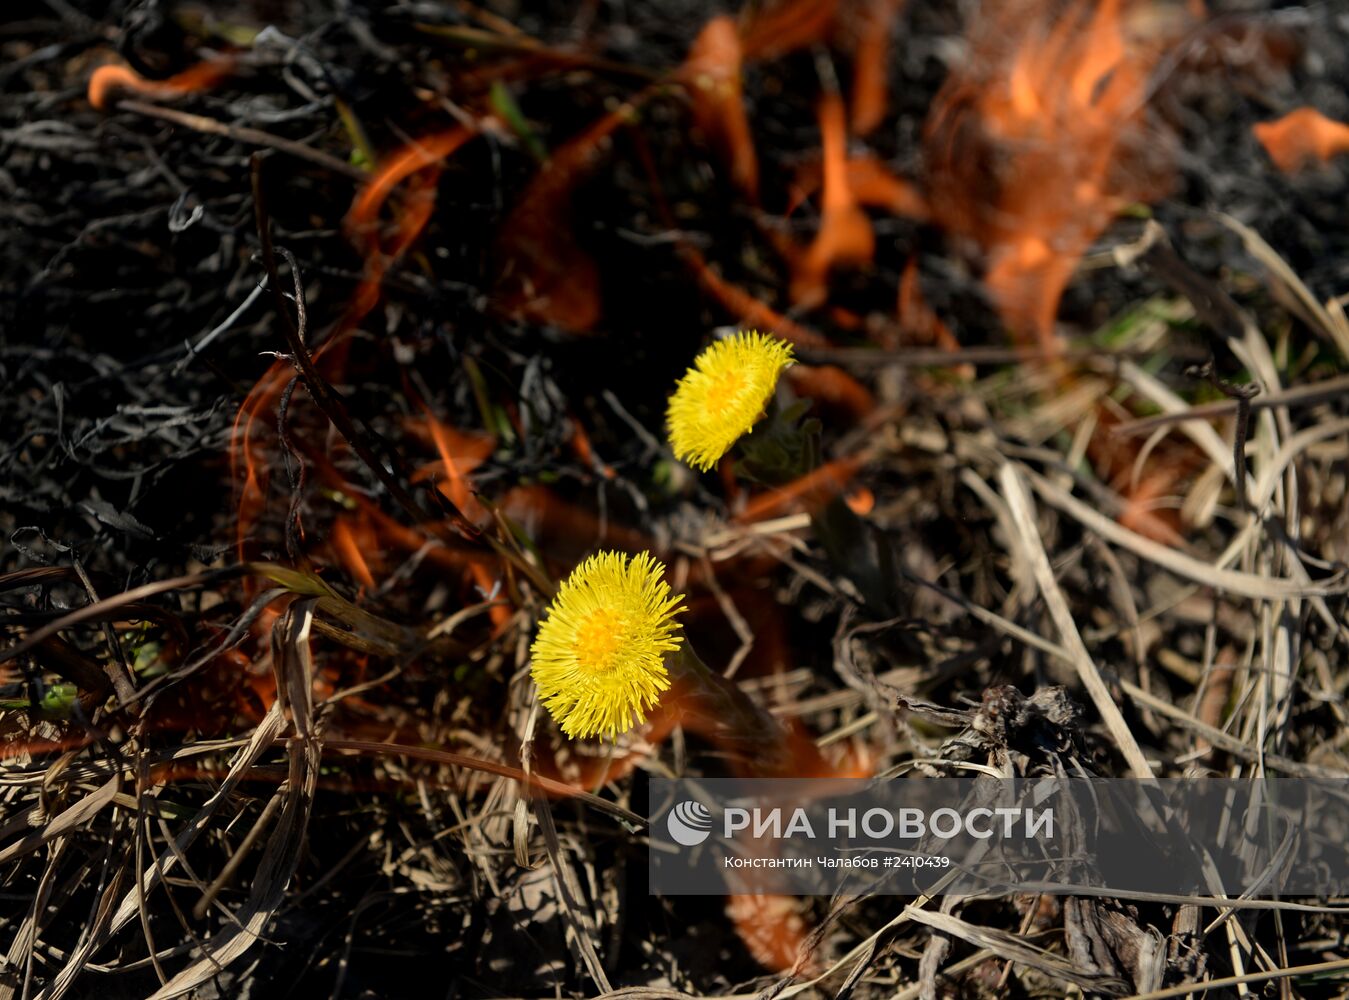 Сжигание сухой травы в Новгородской области